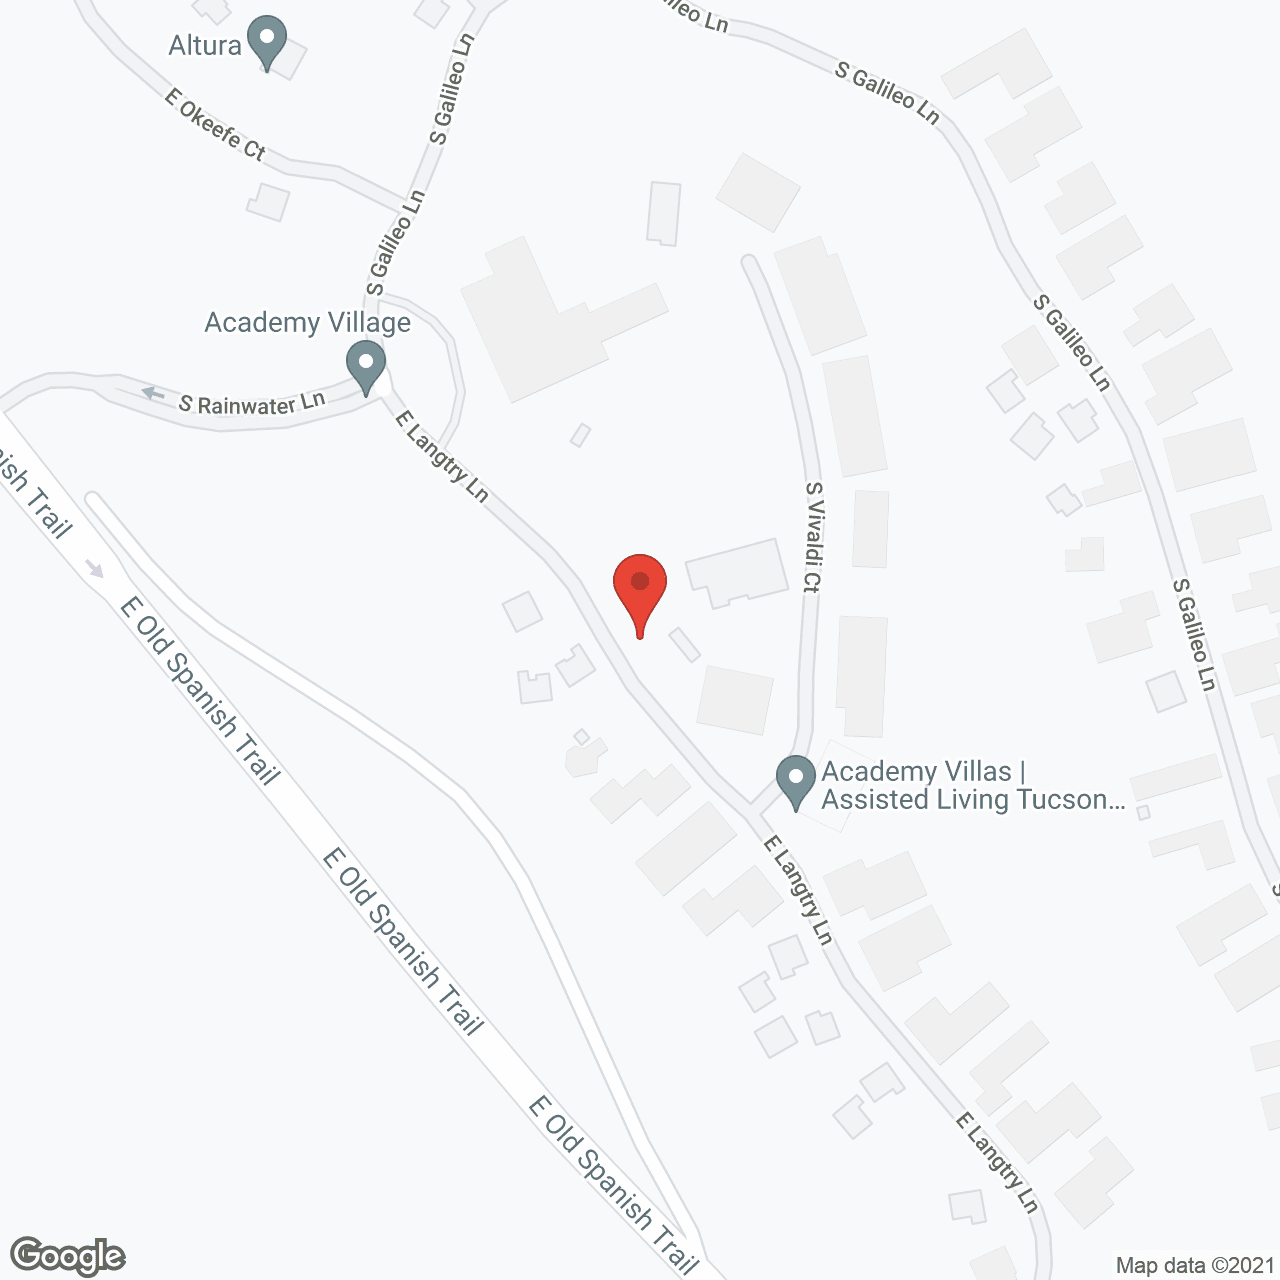 Academy Villas in google map